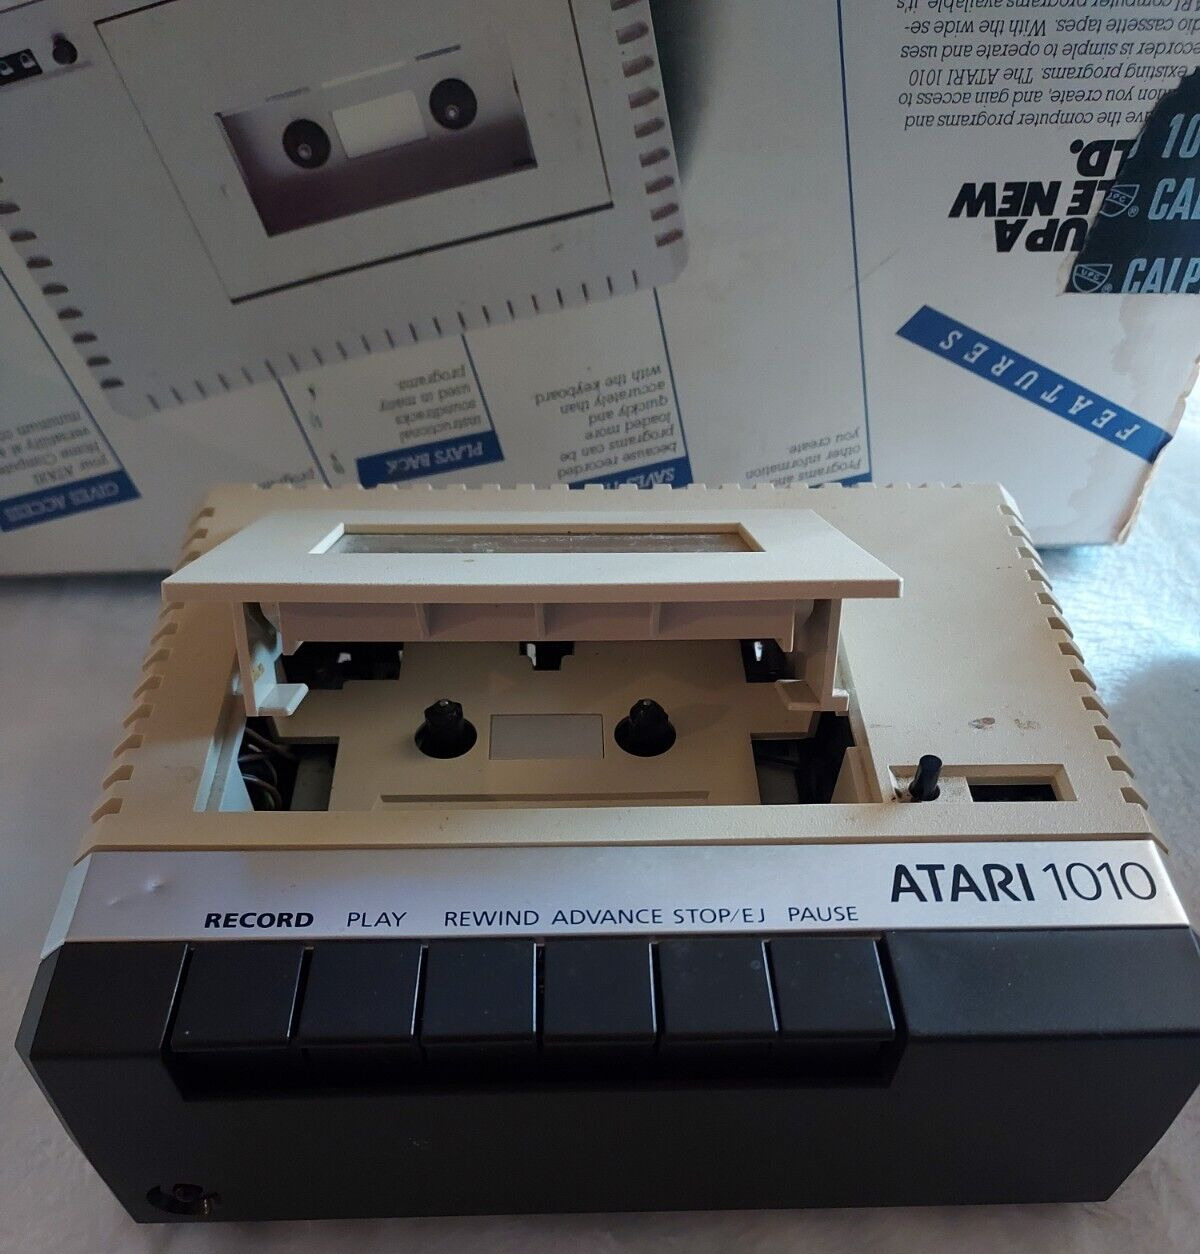 Atari 1010 Program Recorder Untested No Cables (May or may not work)